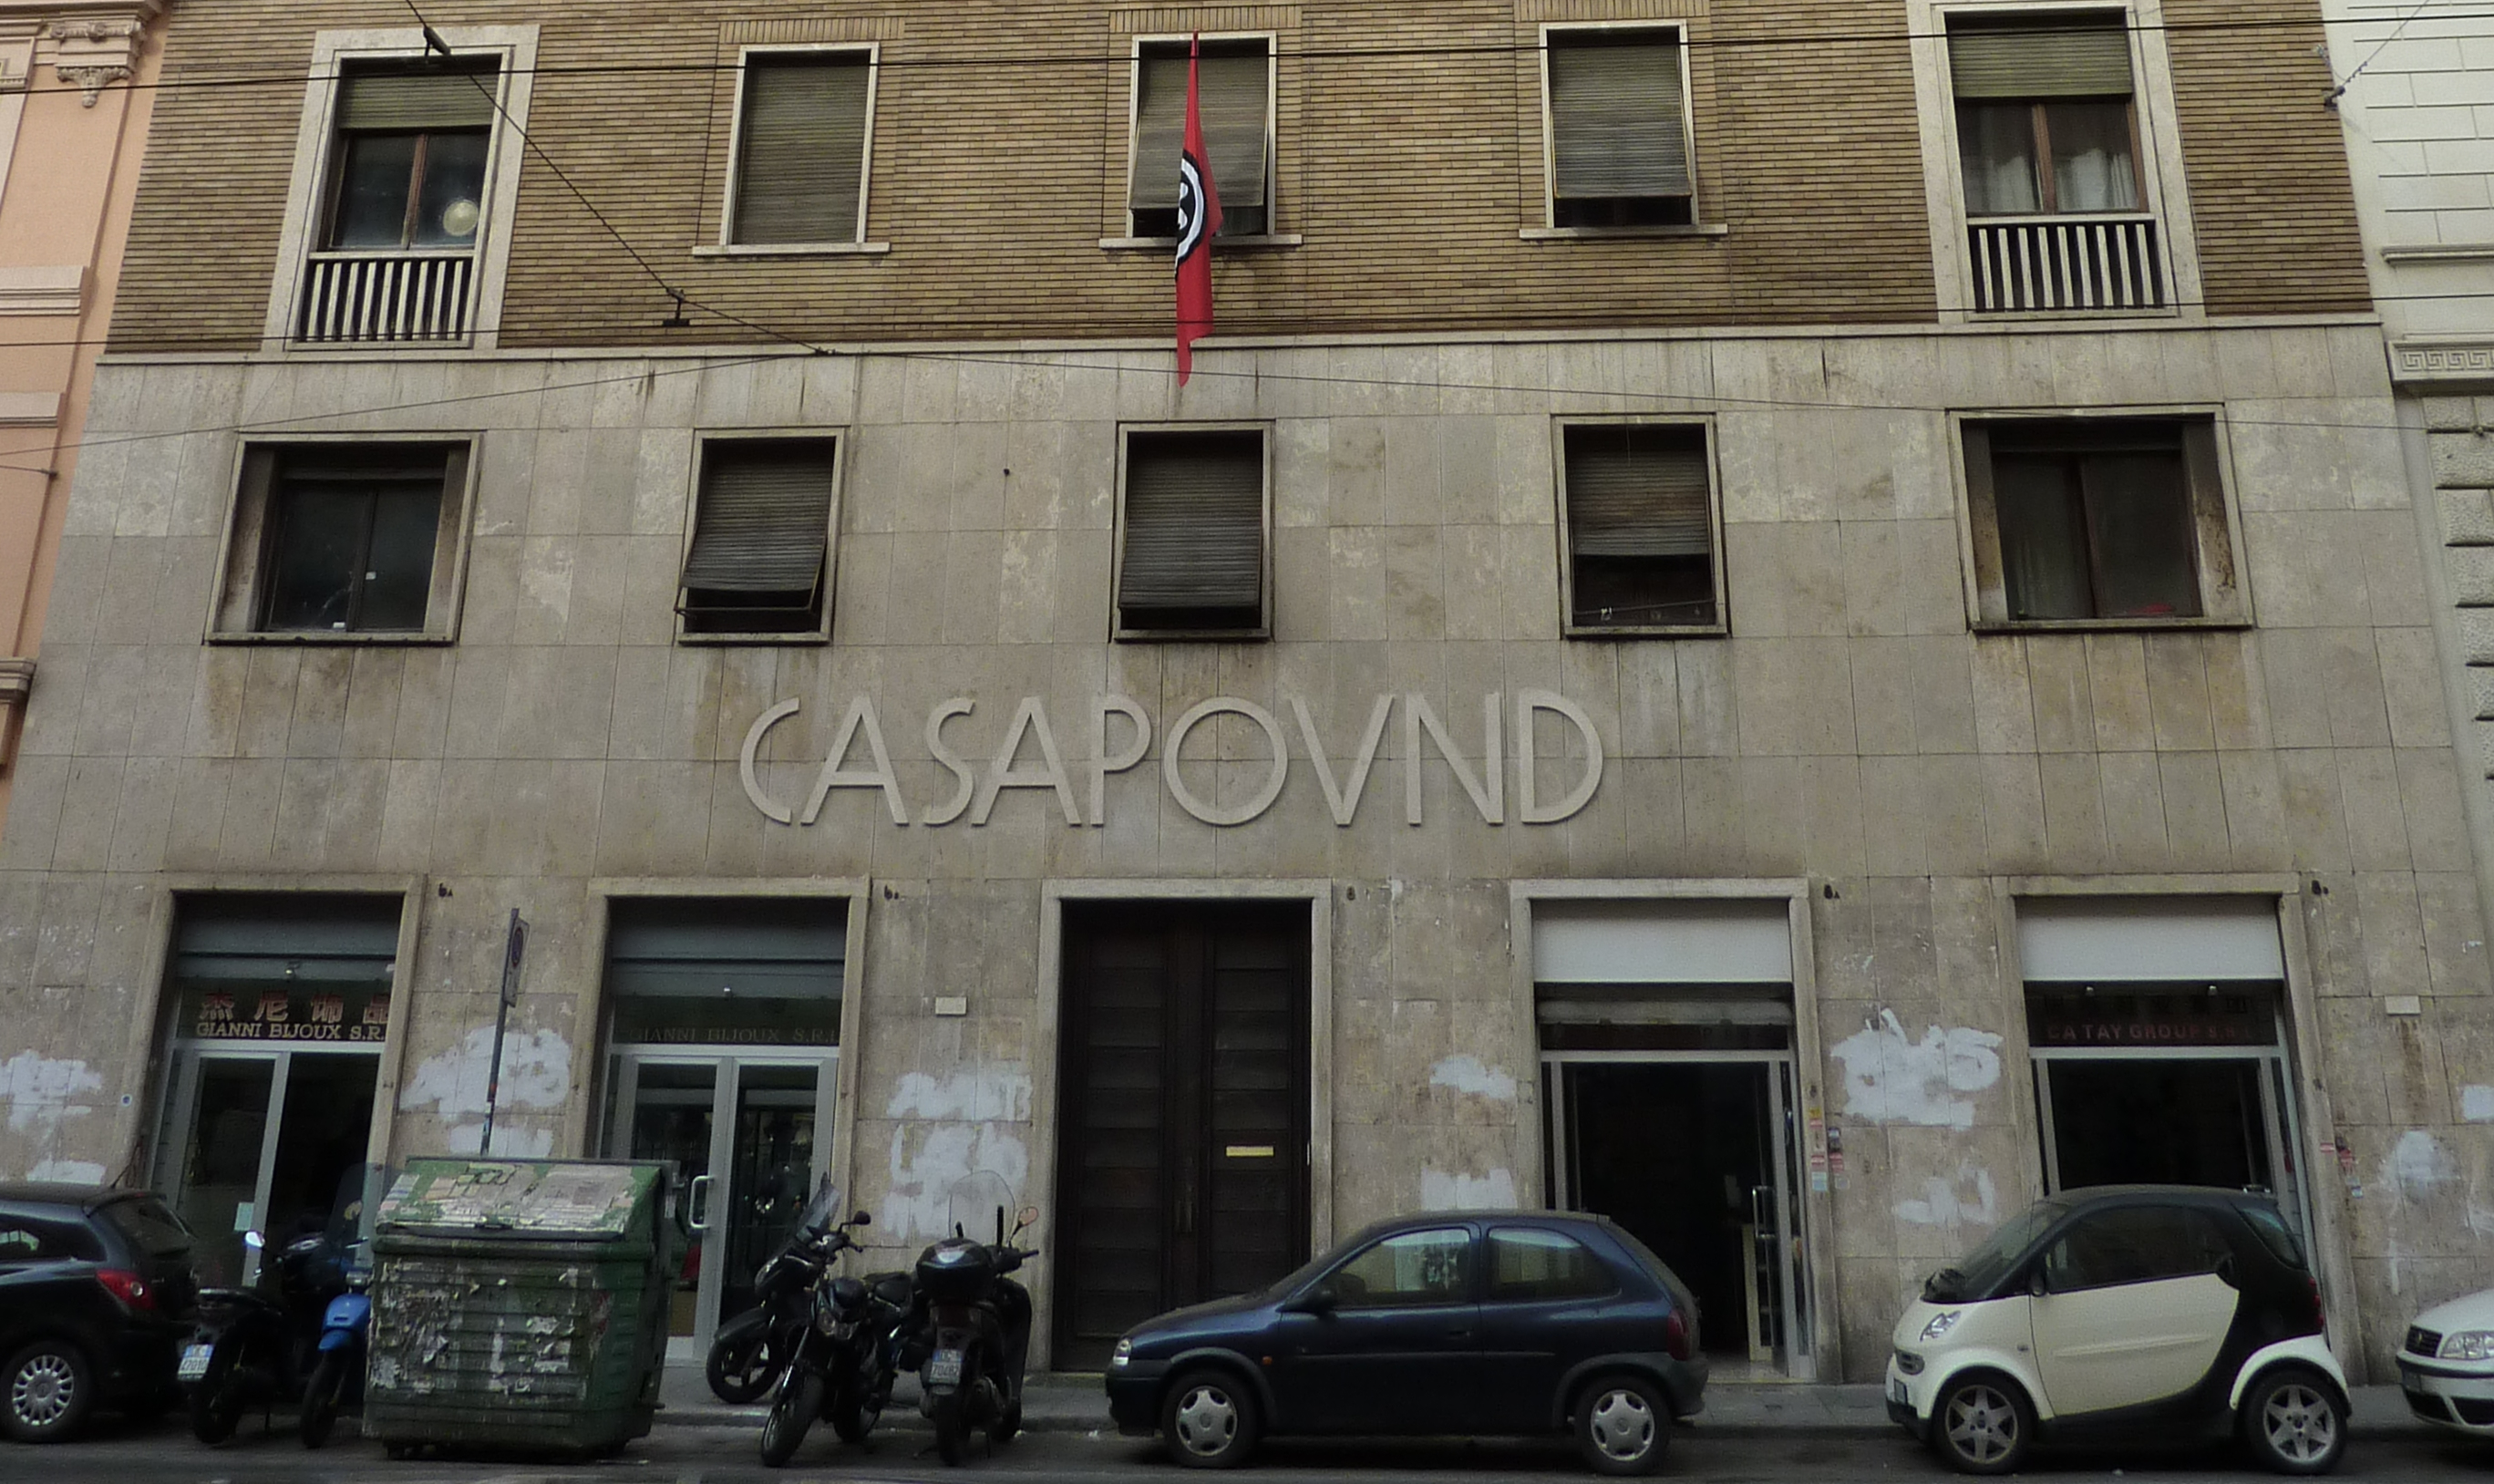 Imóvel pertence a uma agência do Ministério da Economia e das Finanças e foi ocupado pelo mais conhecido movimento neofascista italiano em dezembro de 2003